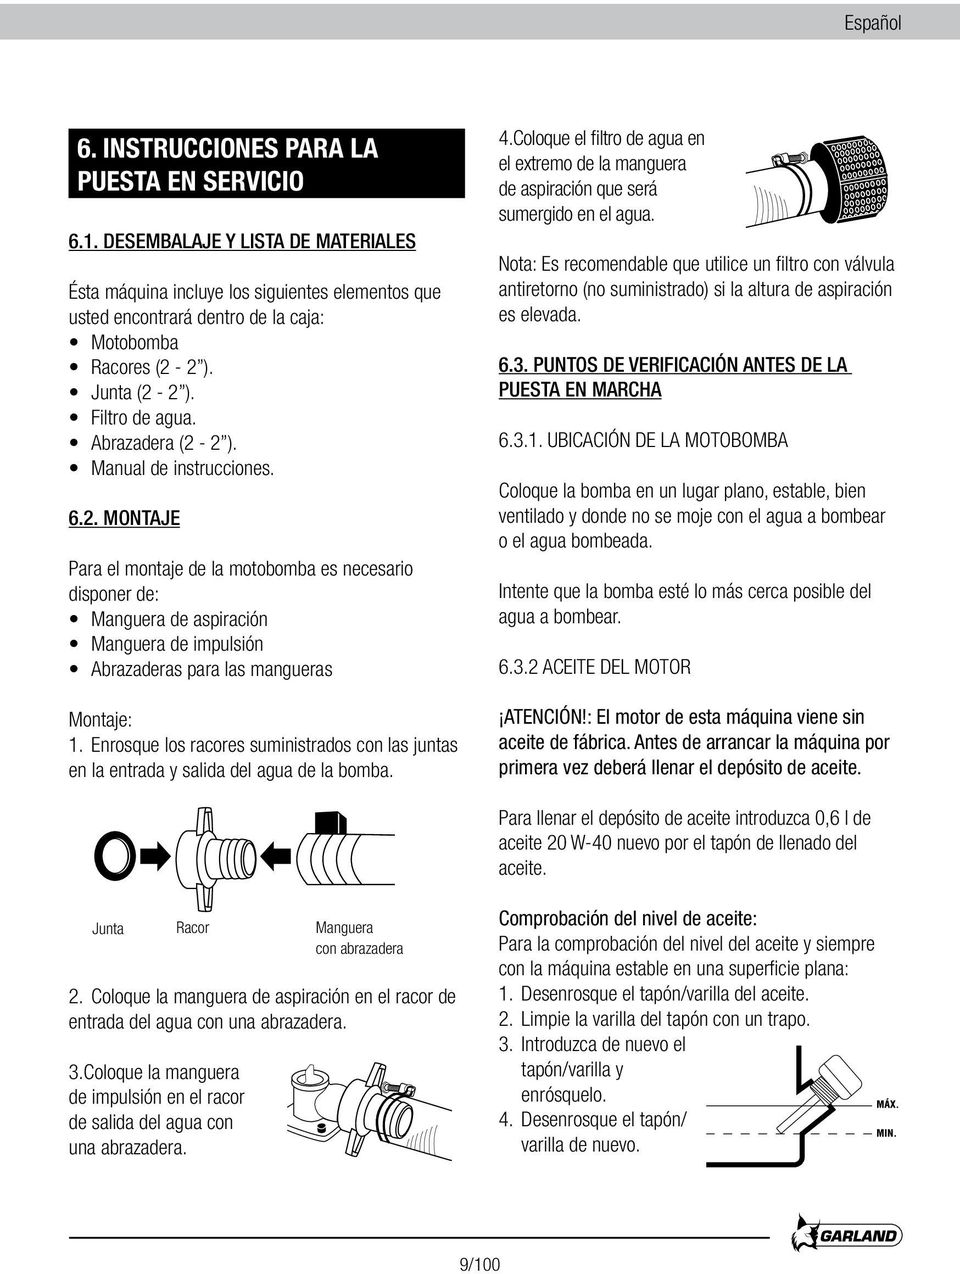 Manual de instrucciones. 6.2. MONTAJE Para el montaje de la motobomba es necesario disponer de: Manguera de aspiración Manguera de impulsión Abrazaderas para las mangueras Montaje: 1.